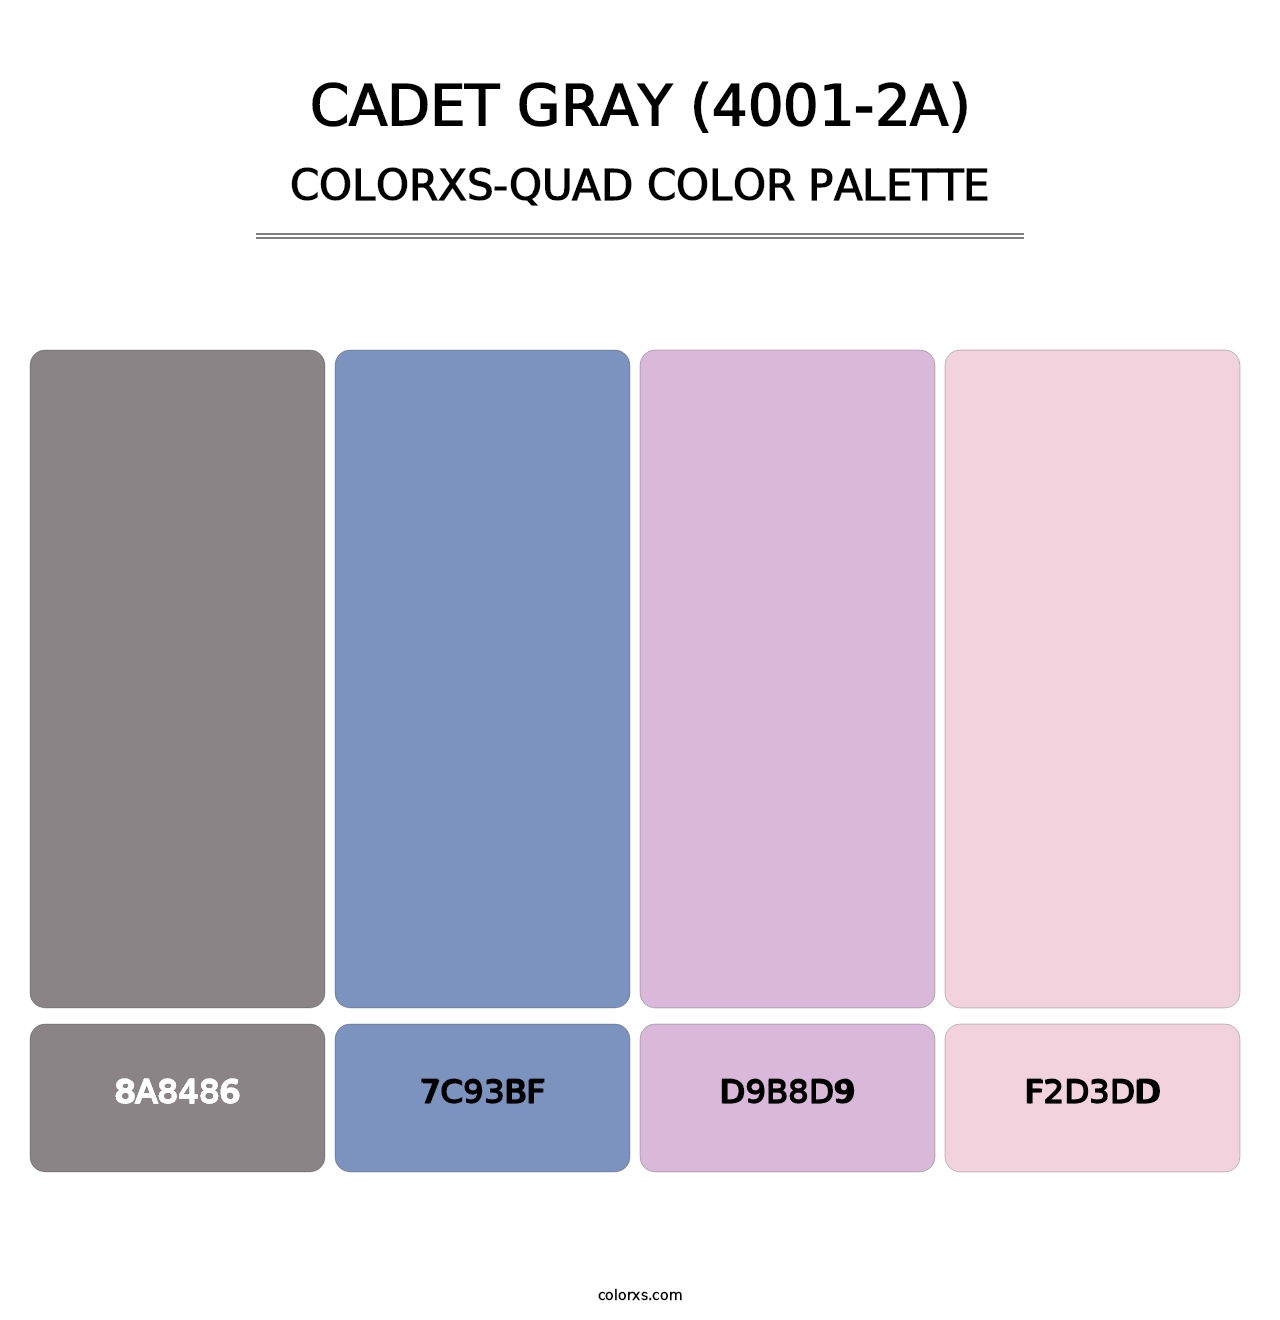 Cadet Gray (4001-2A) - Colorxs Quad Palette